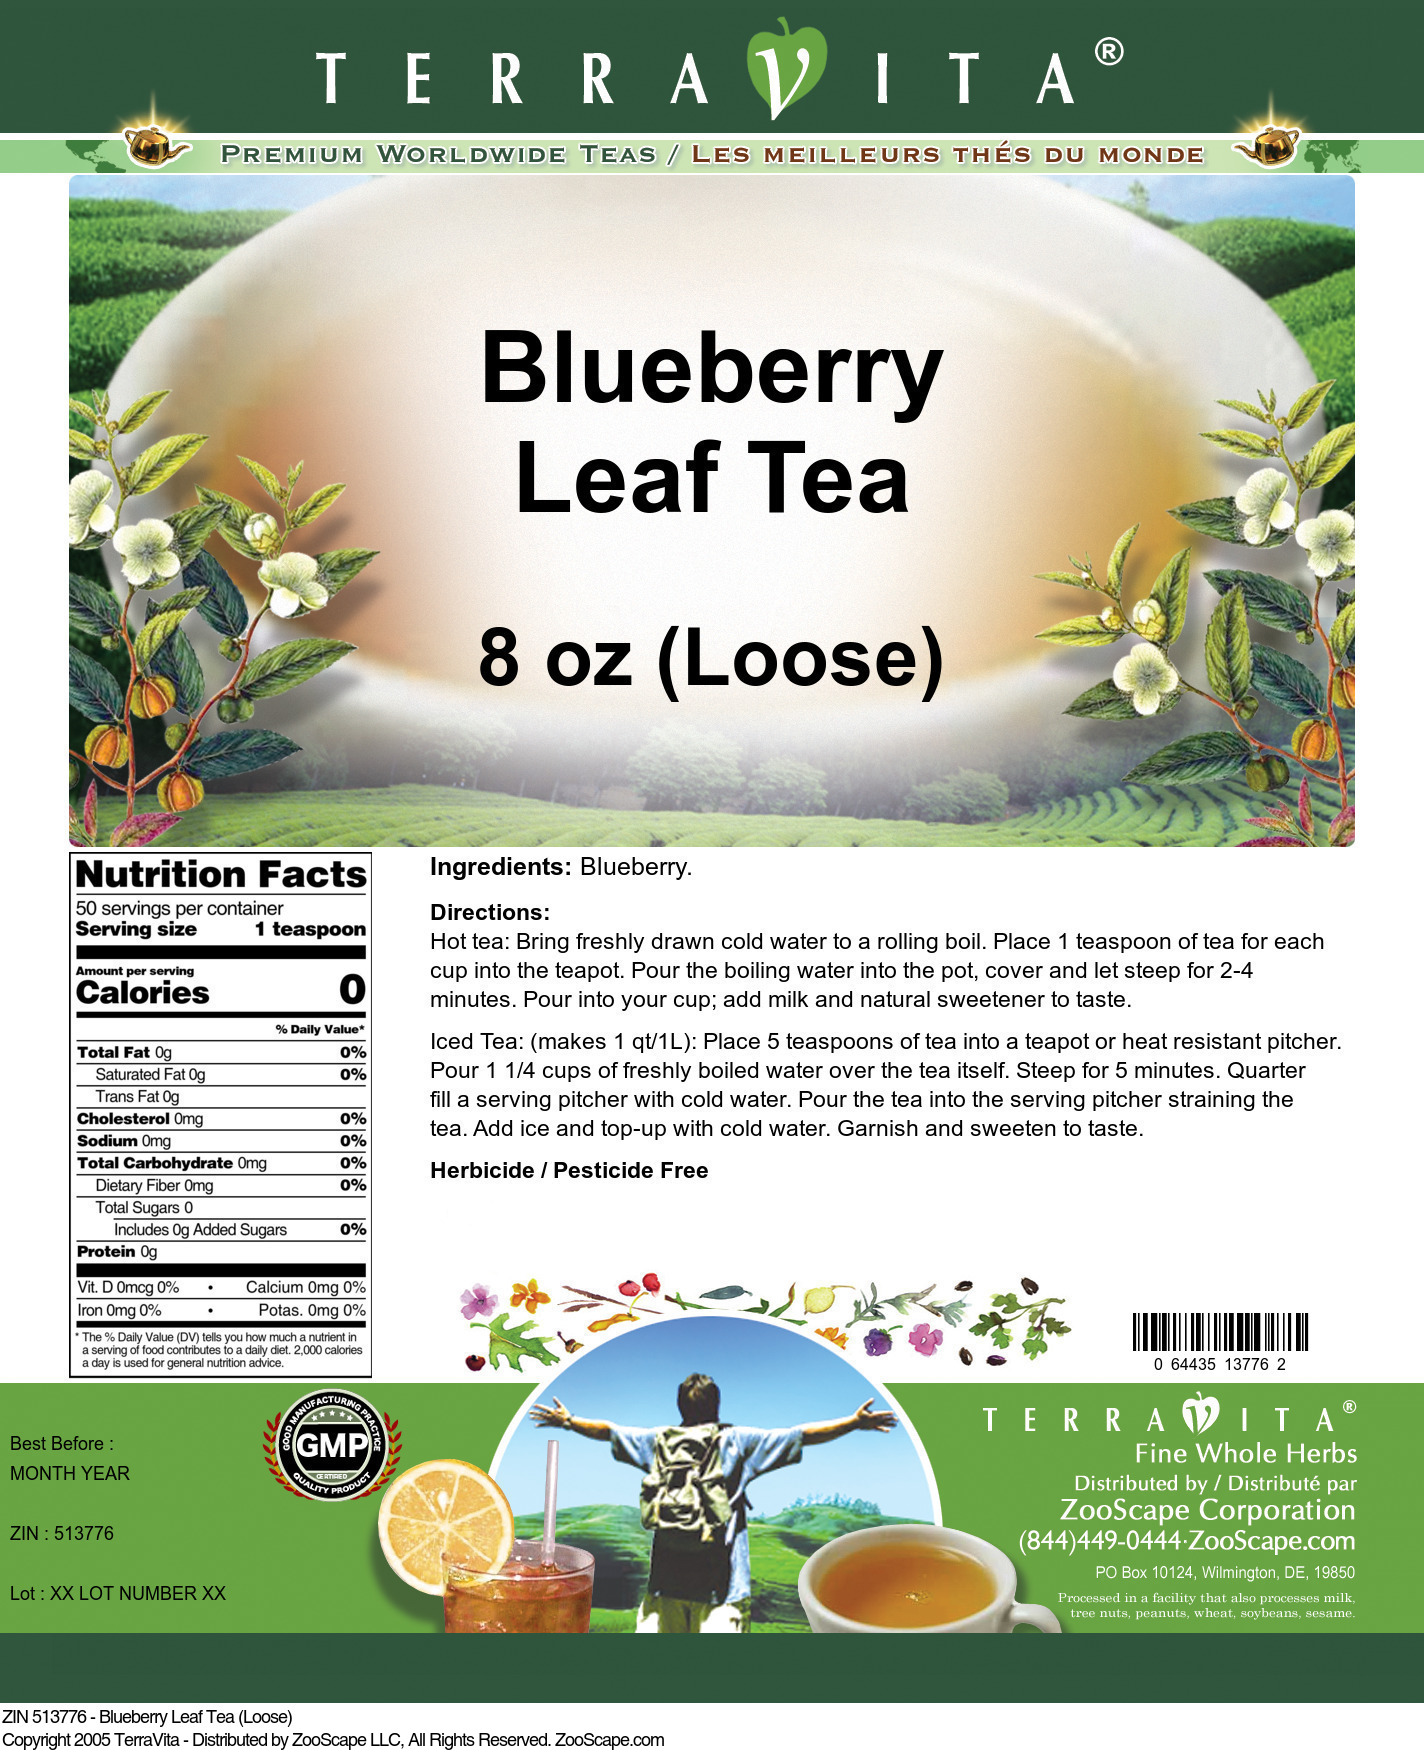 Blueberry Leaf Tea (Loose) - Label